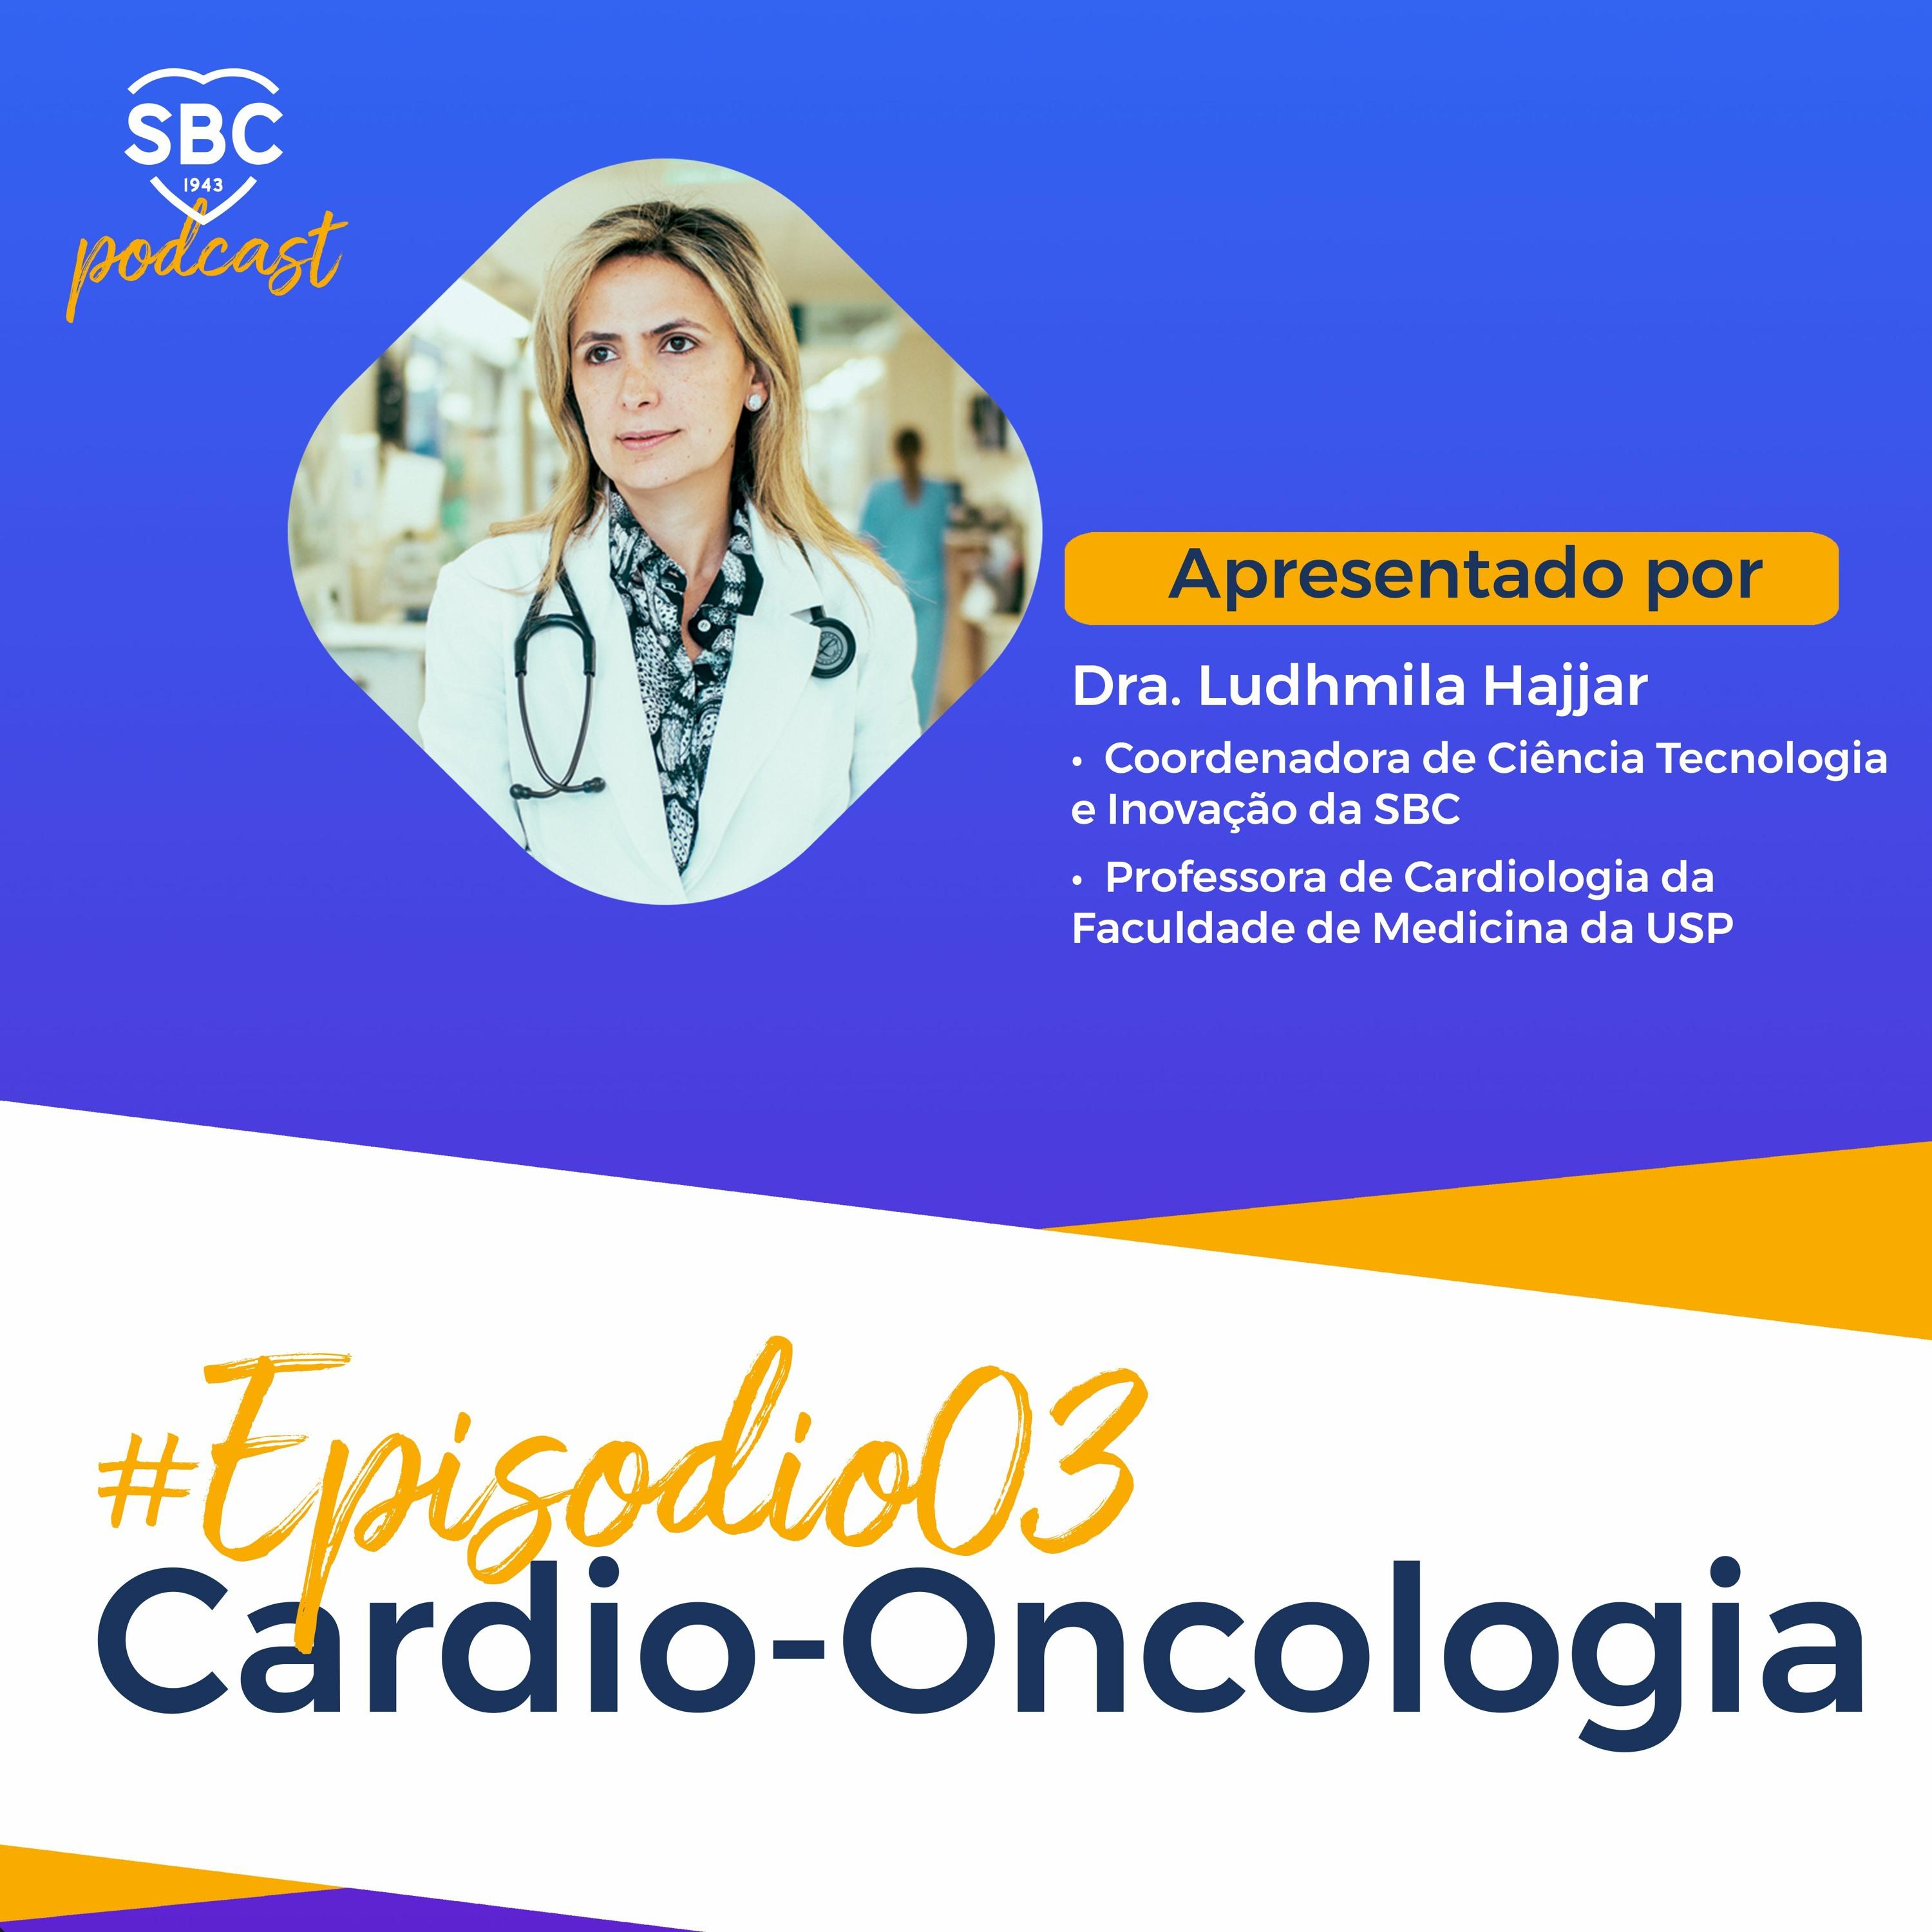 Neste episódio, a Dra. Ludhmila Abrahão Hajjar fala sobre a importância da Cardio-oncologia e os avanços da área e como a SBC atuará para difundir esses conhecimentos entre os cardiologistas brasileiros.